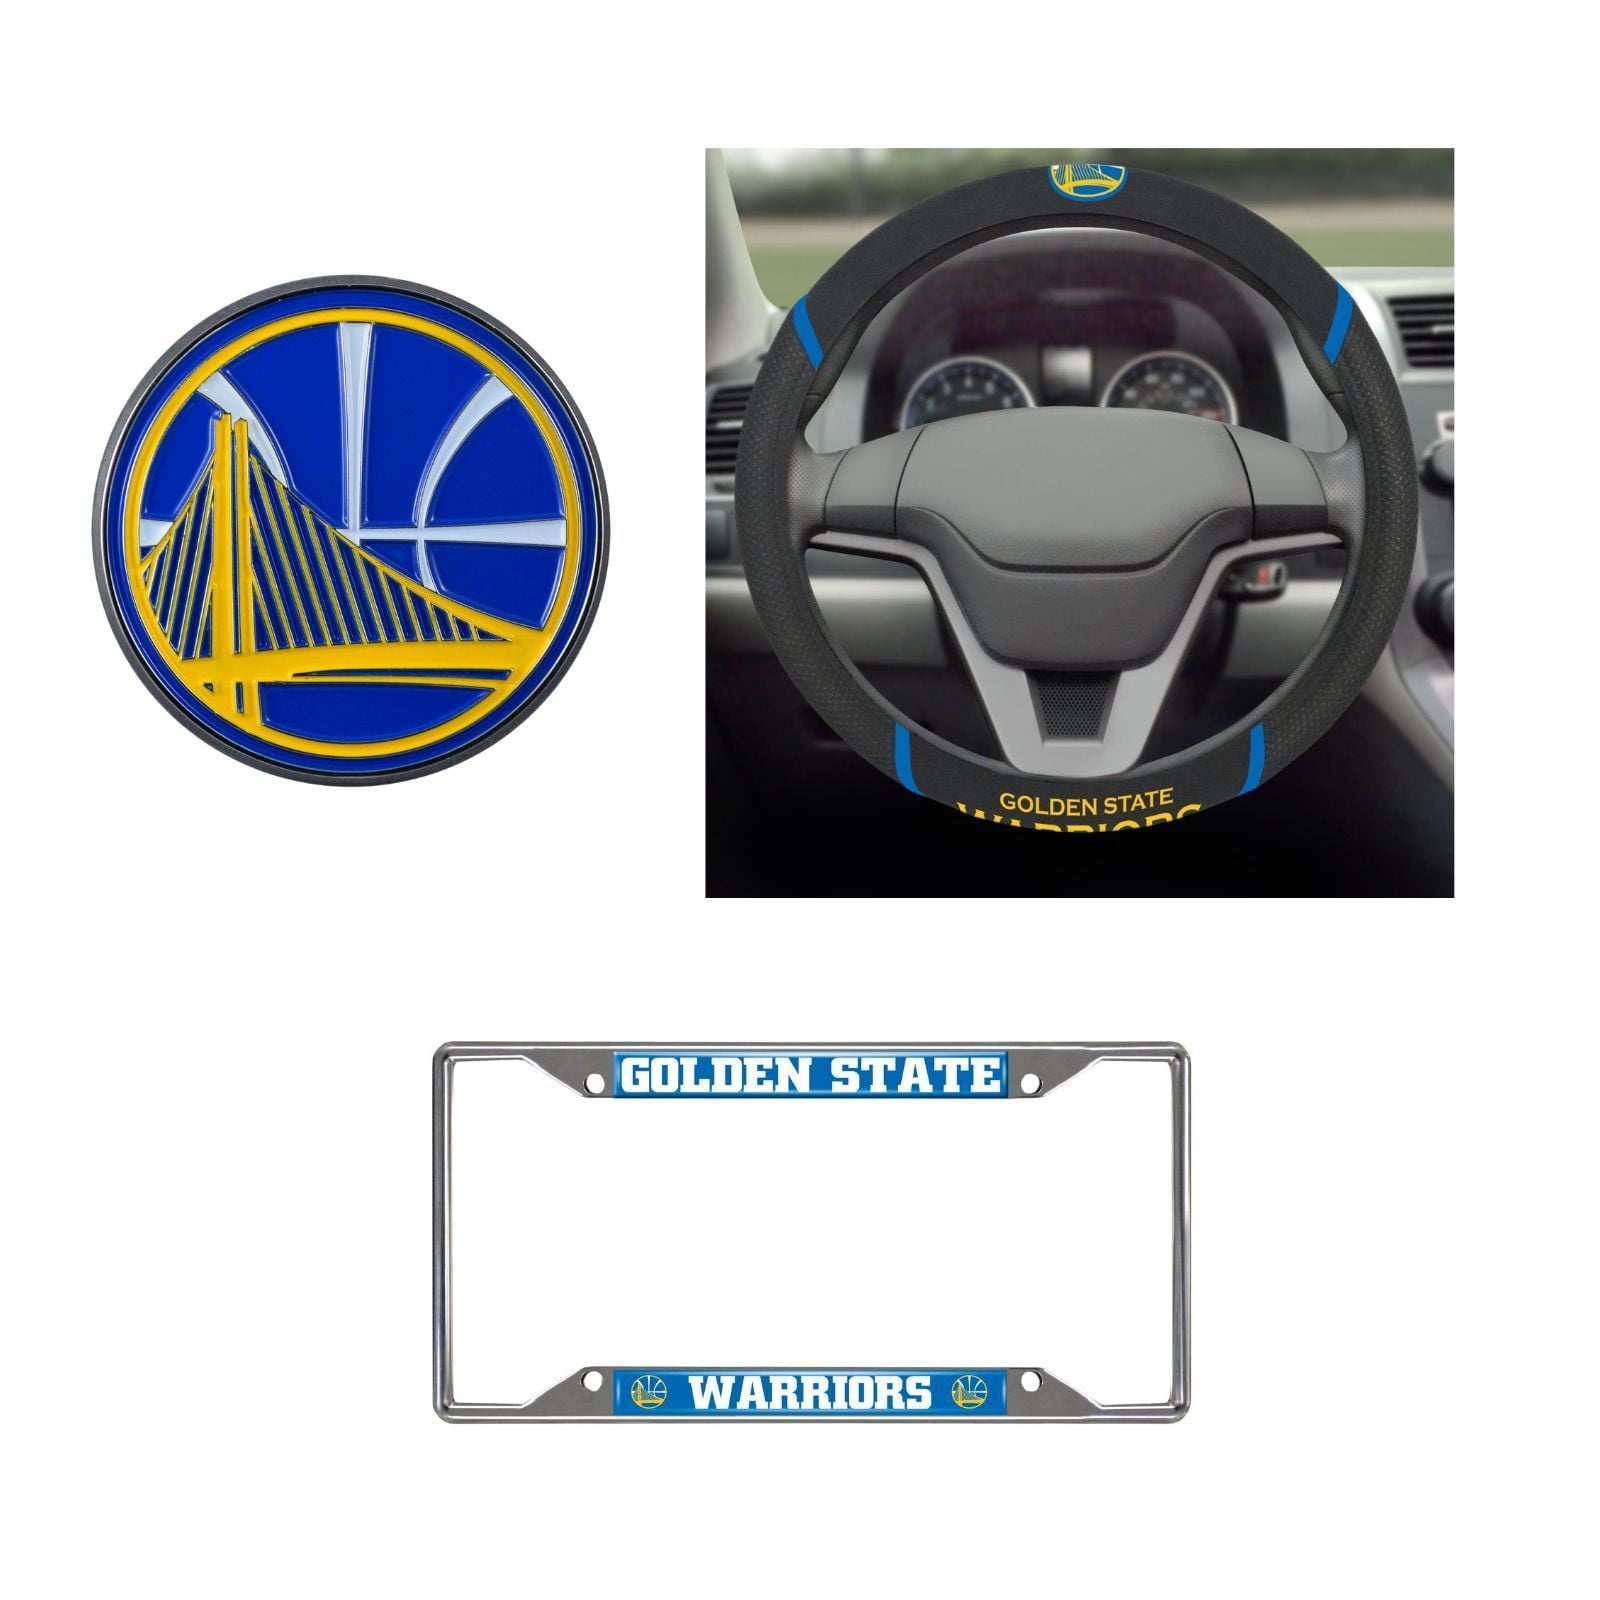 Golden State Warriors Steering Wheel Cover, License Plate Frame, 3D Color Emblem